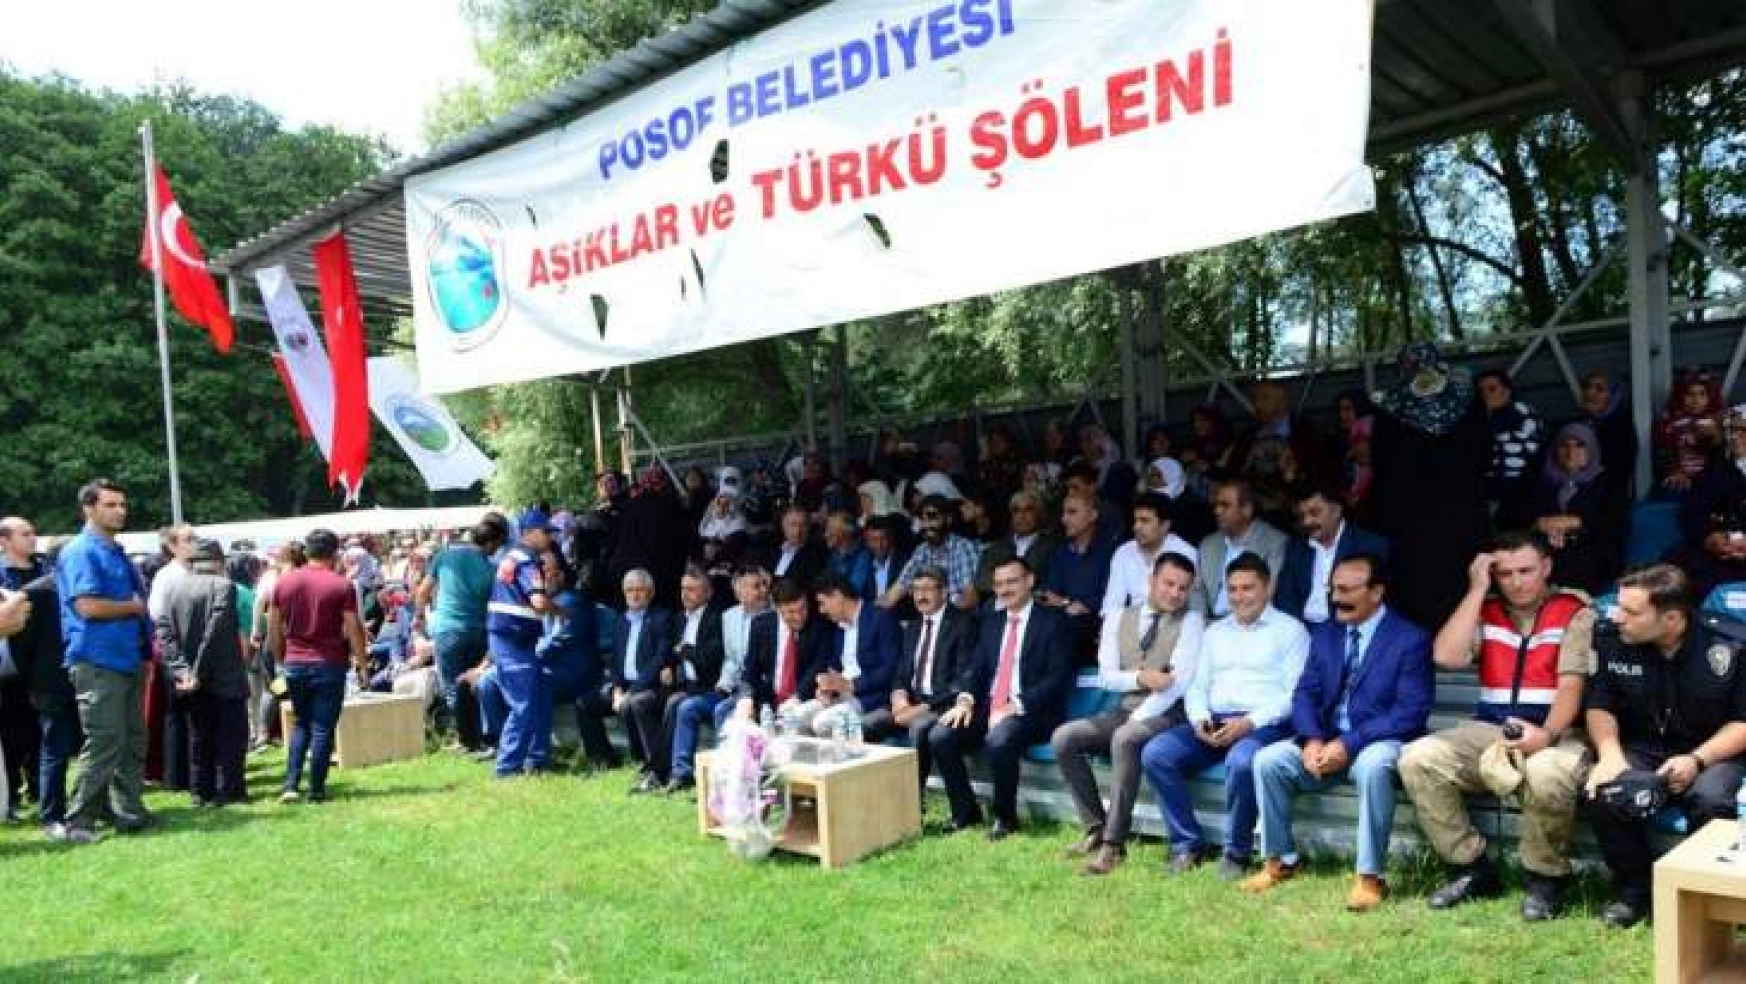 Ardahan'da 'Aşıklar ve Türkü Şöleni'